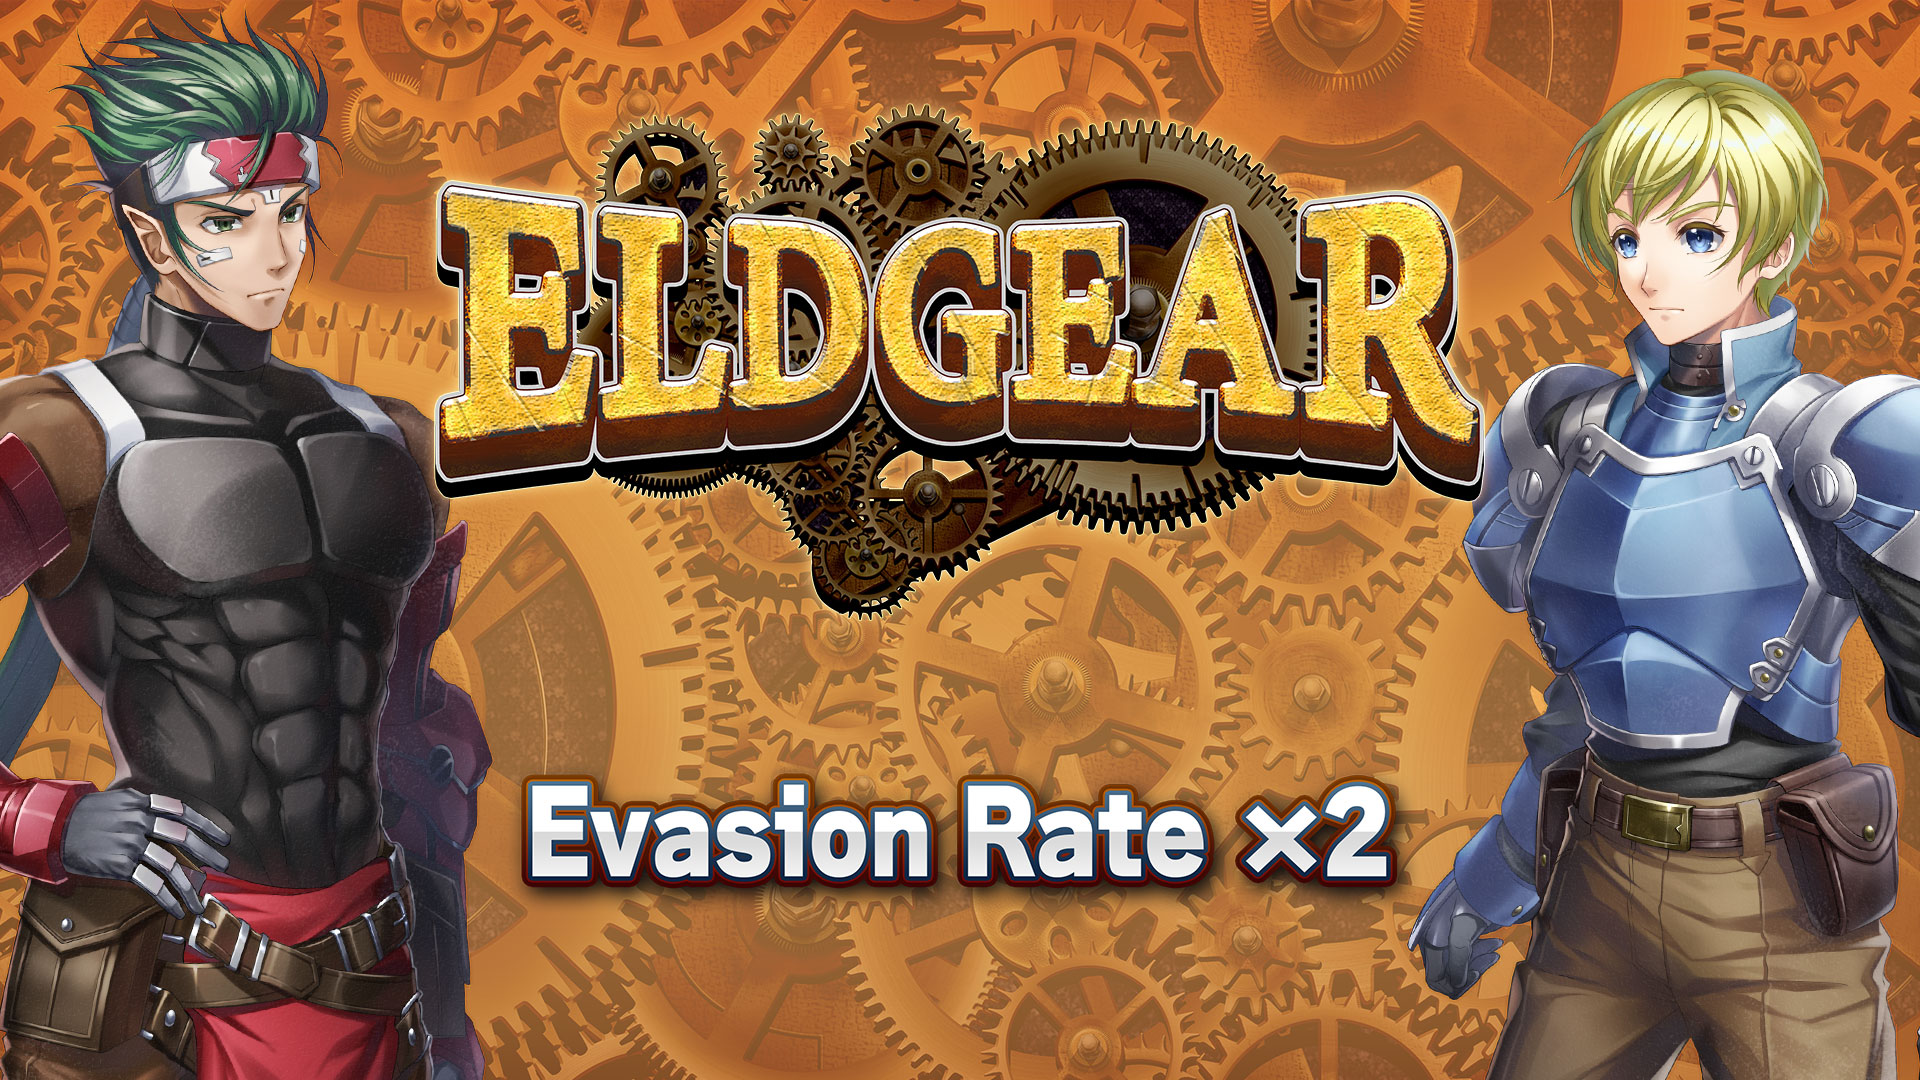 Evasion Rate x2 - Eldgear